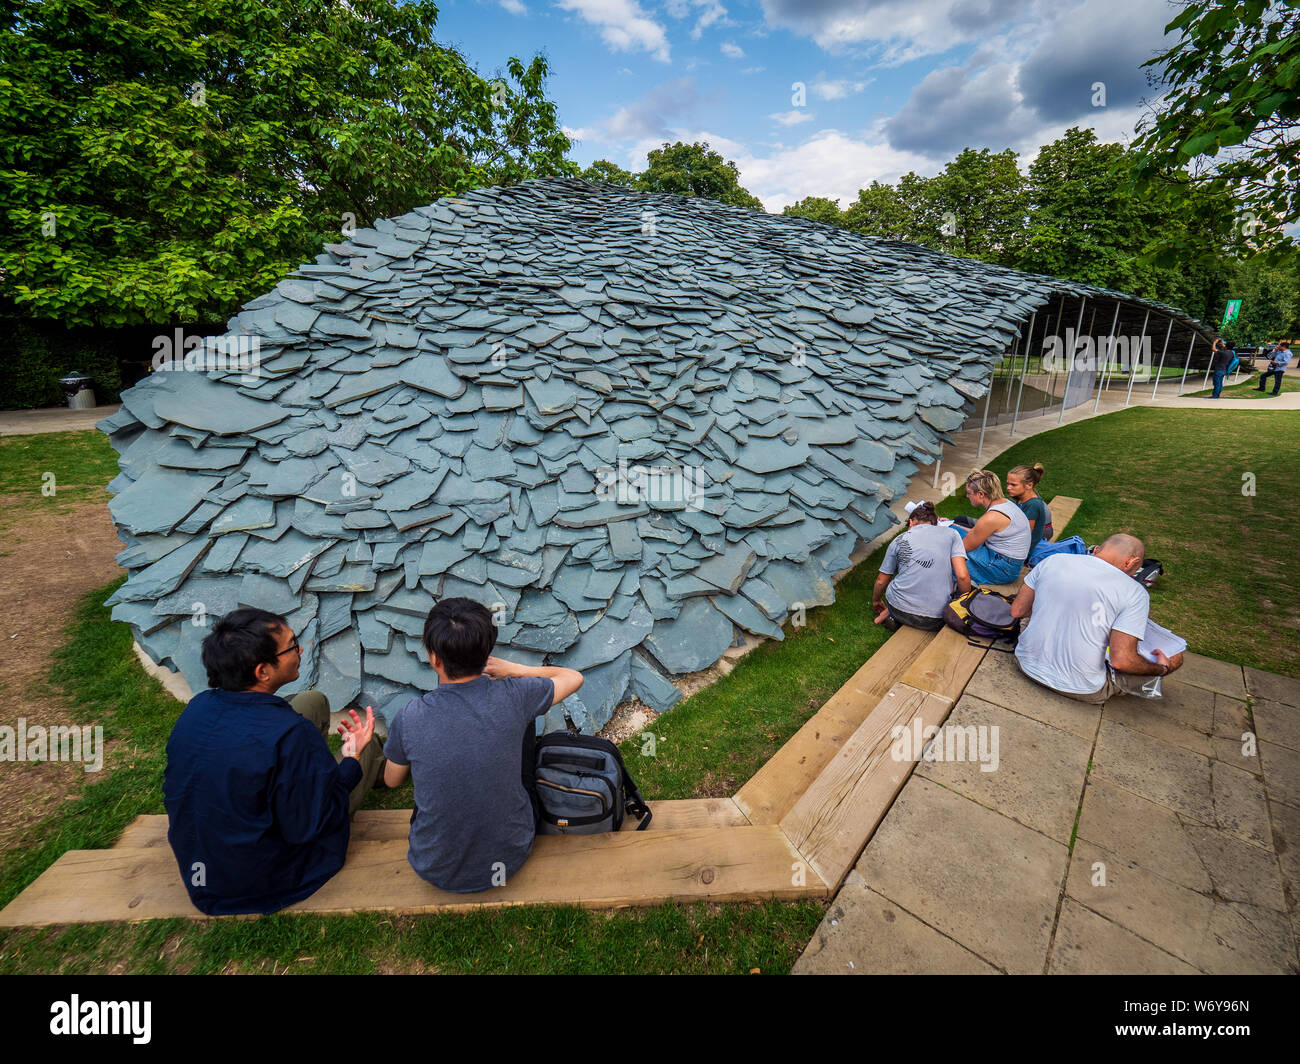 Serpentine Pavilion 2019 nell'Hyde Park di Londra. Progettato dall architetto giapponese Junya Ishigami, aperto tra giugno e ottobre 2019. Foto Stock